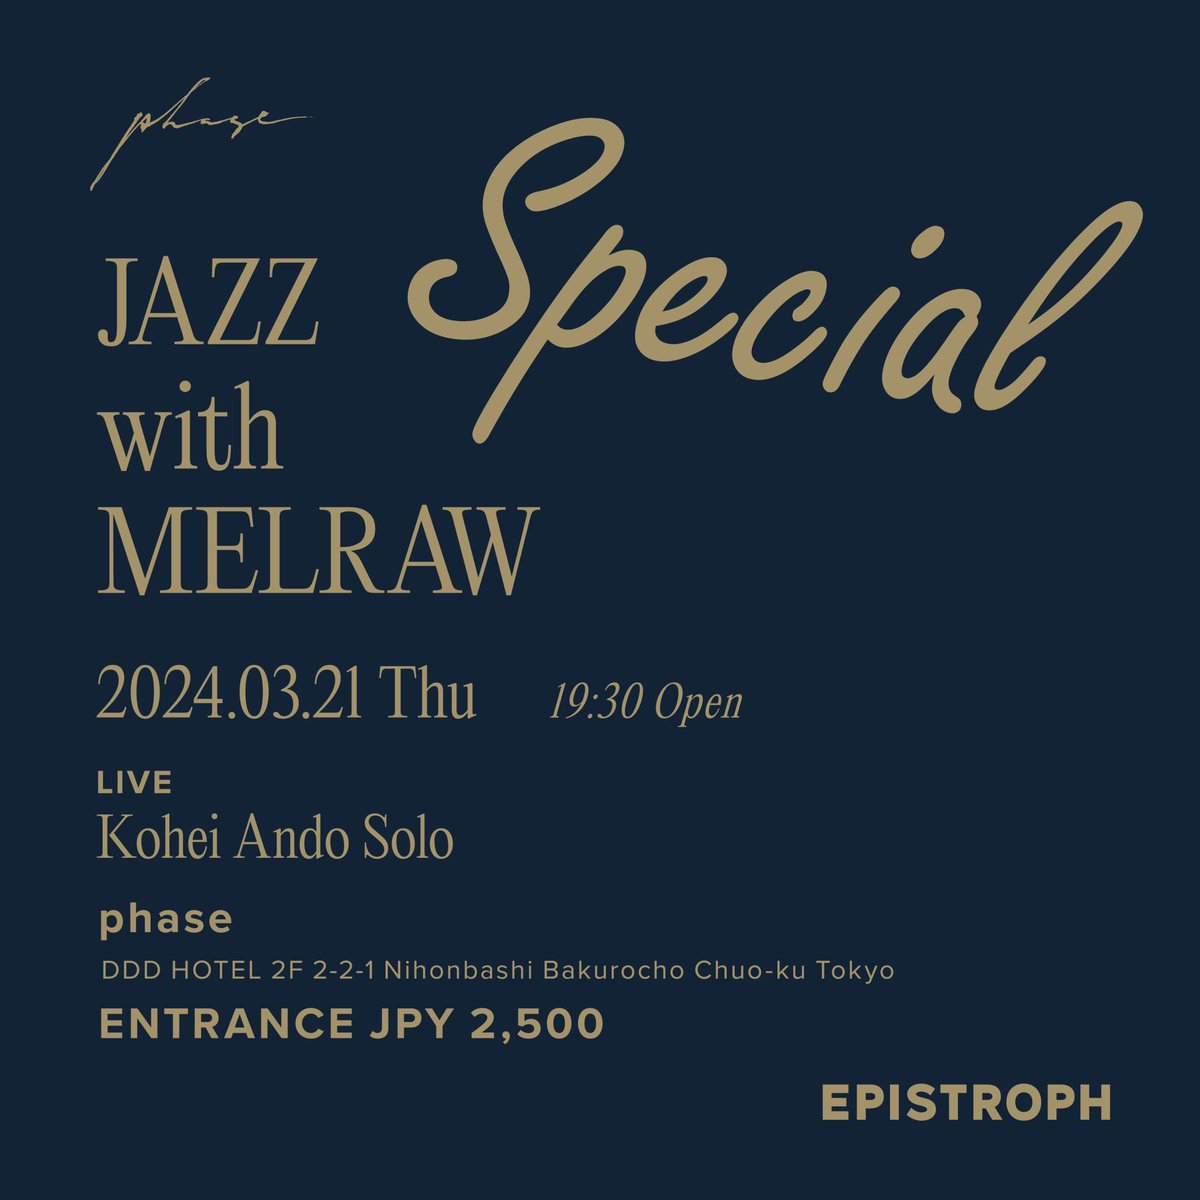 次回3/21のJAZZ with MELRAWはスペシャル回！
ソロツアーの追加公演としてDJ+生演奏もお届けします😌

#JwMELRAW #EPISTROPH #phase_tokyo